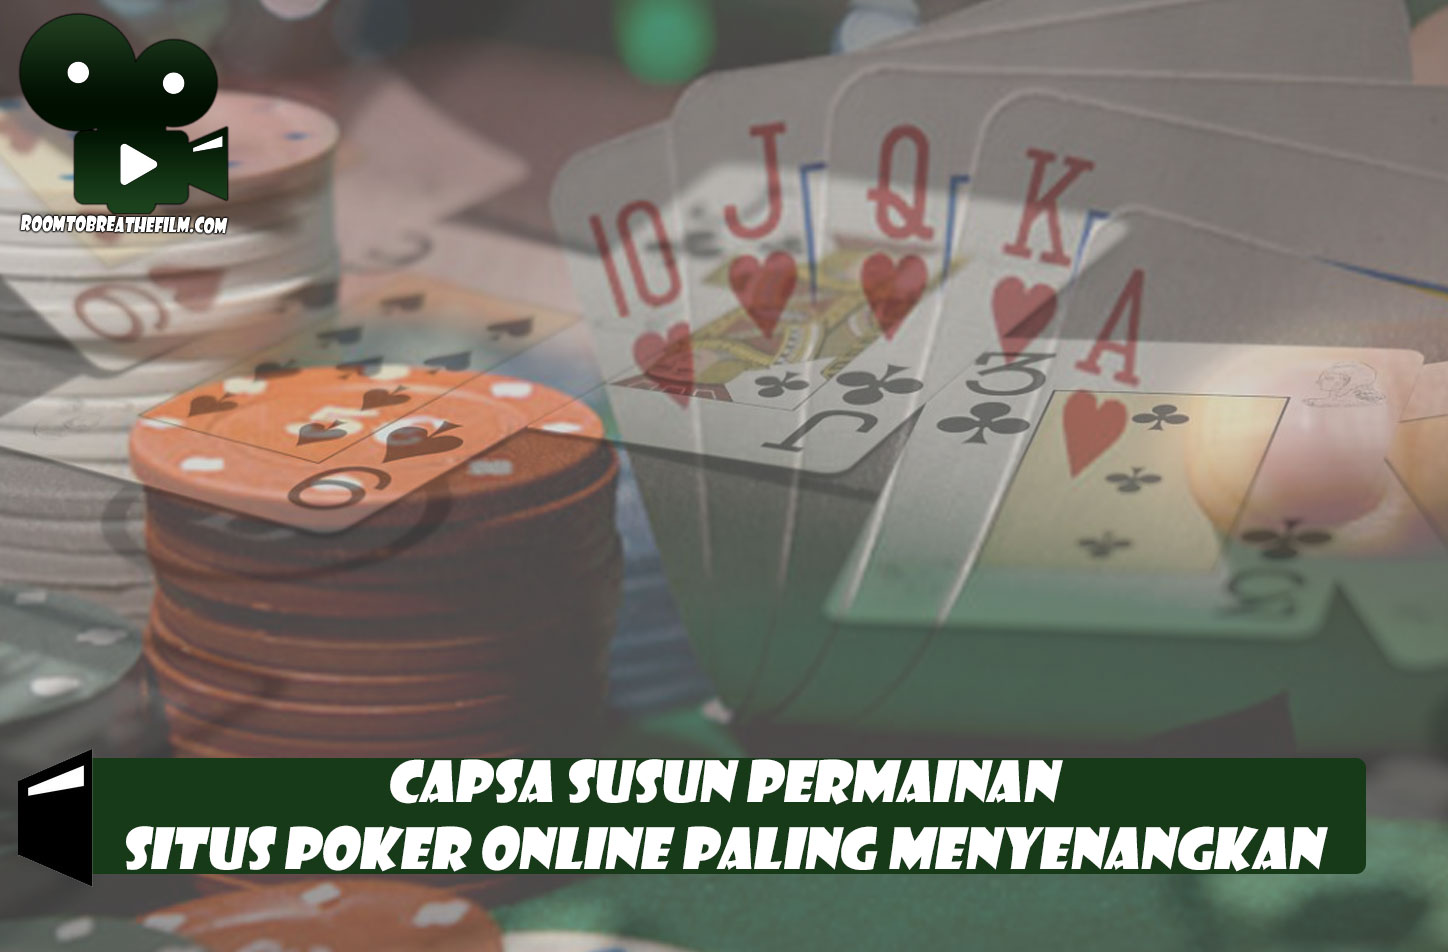 Capsa Susun Permainan Situs Poker Online Paling Menyenangkan